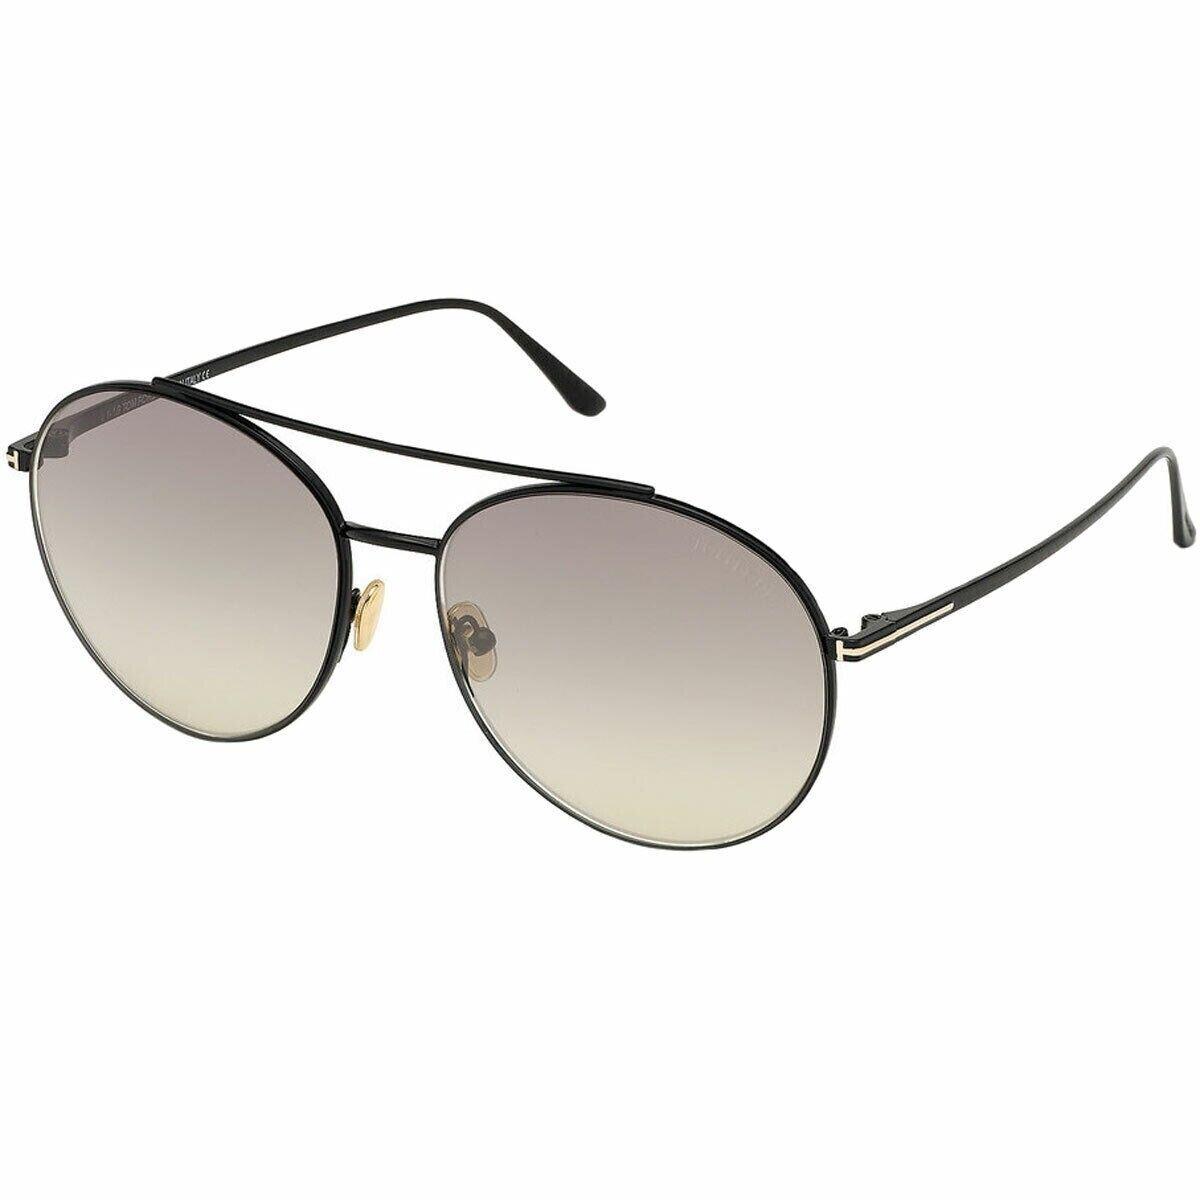 Tom Ford Women`s Sunglasses Cleo Black Metal Frame Gray Mirror Lens FT0757 5901C